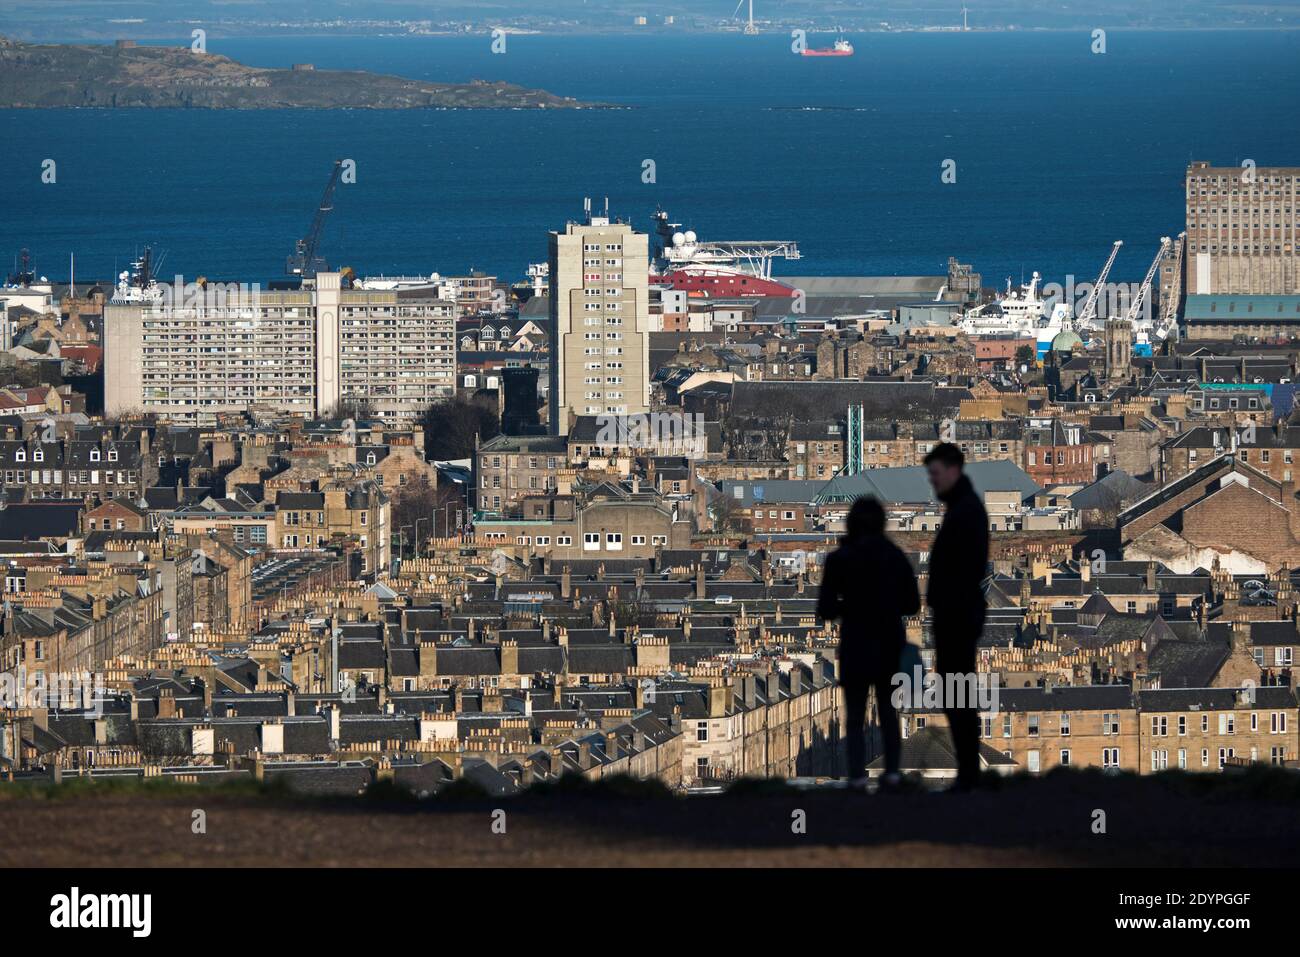 Die Silhouette eines Paares, das auf Calton Hill steht und nach Norden in Richtung Leith und Firth of Forth in Edinburgh, Schottland, Großbritannien schaut. Stockfoto